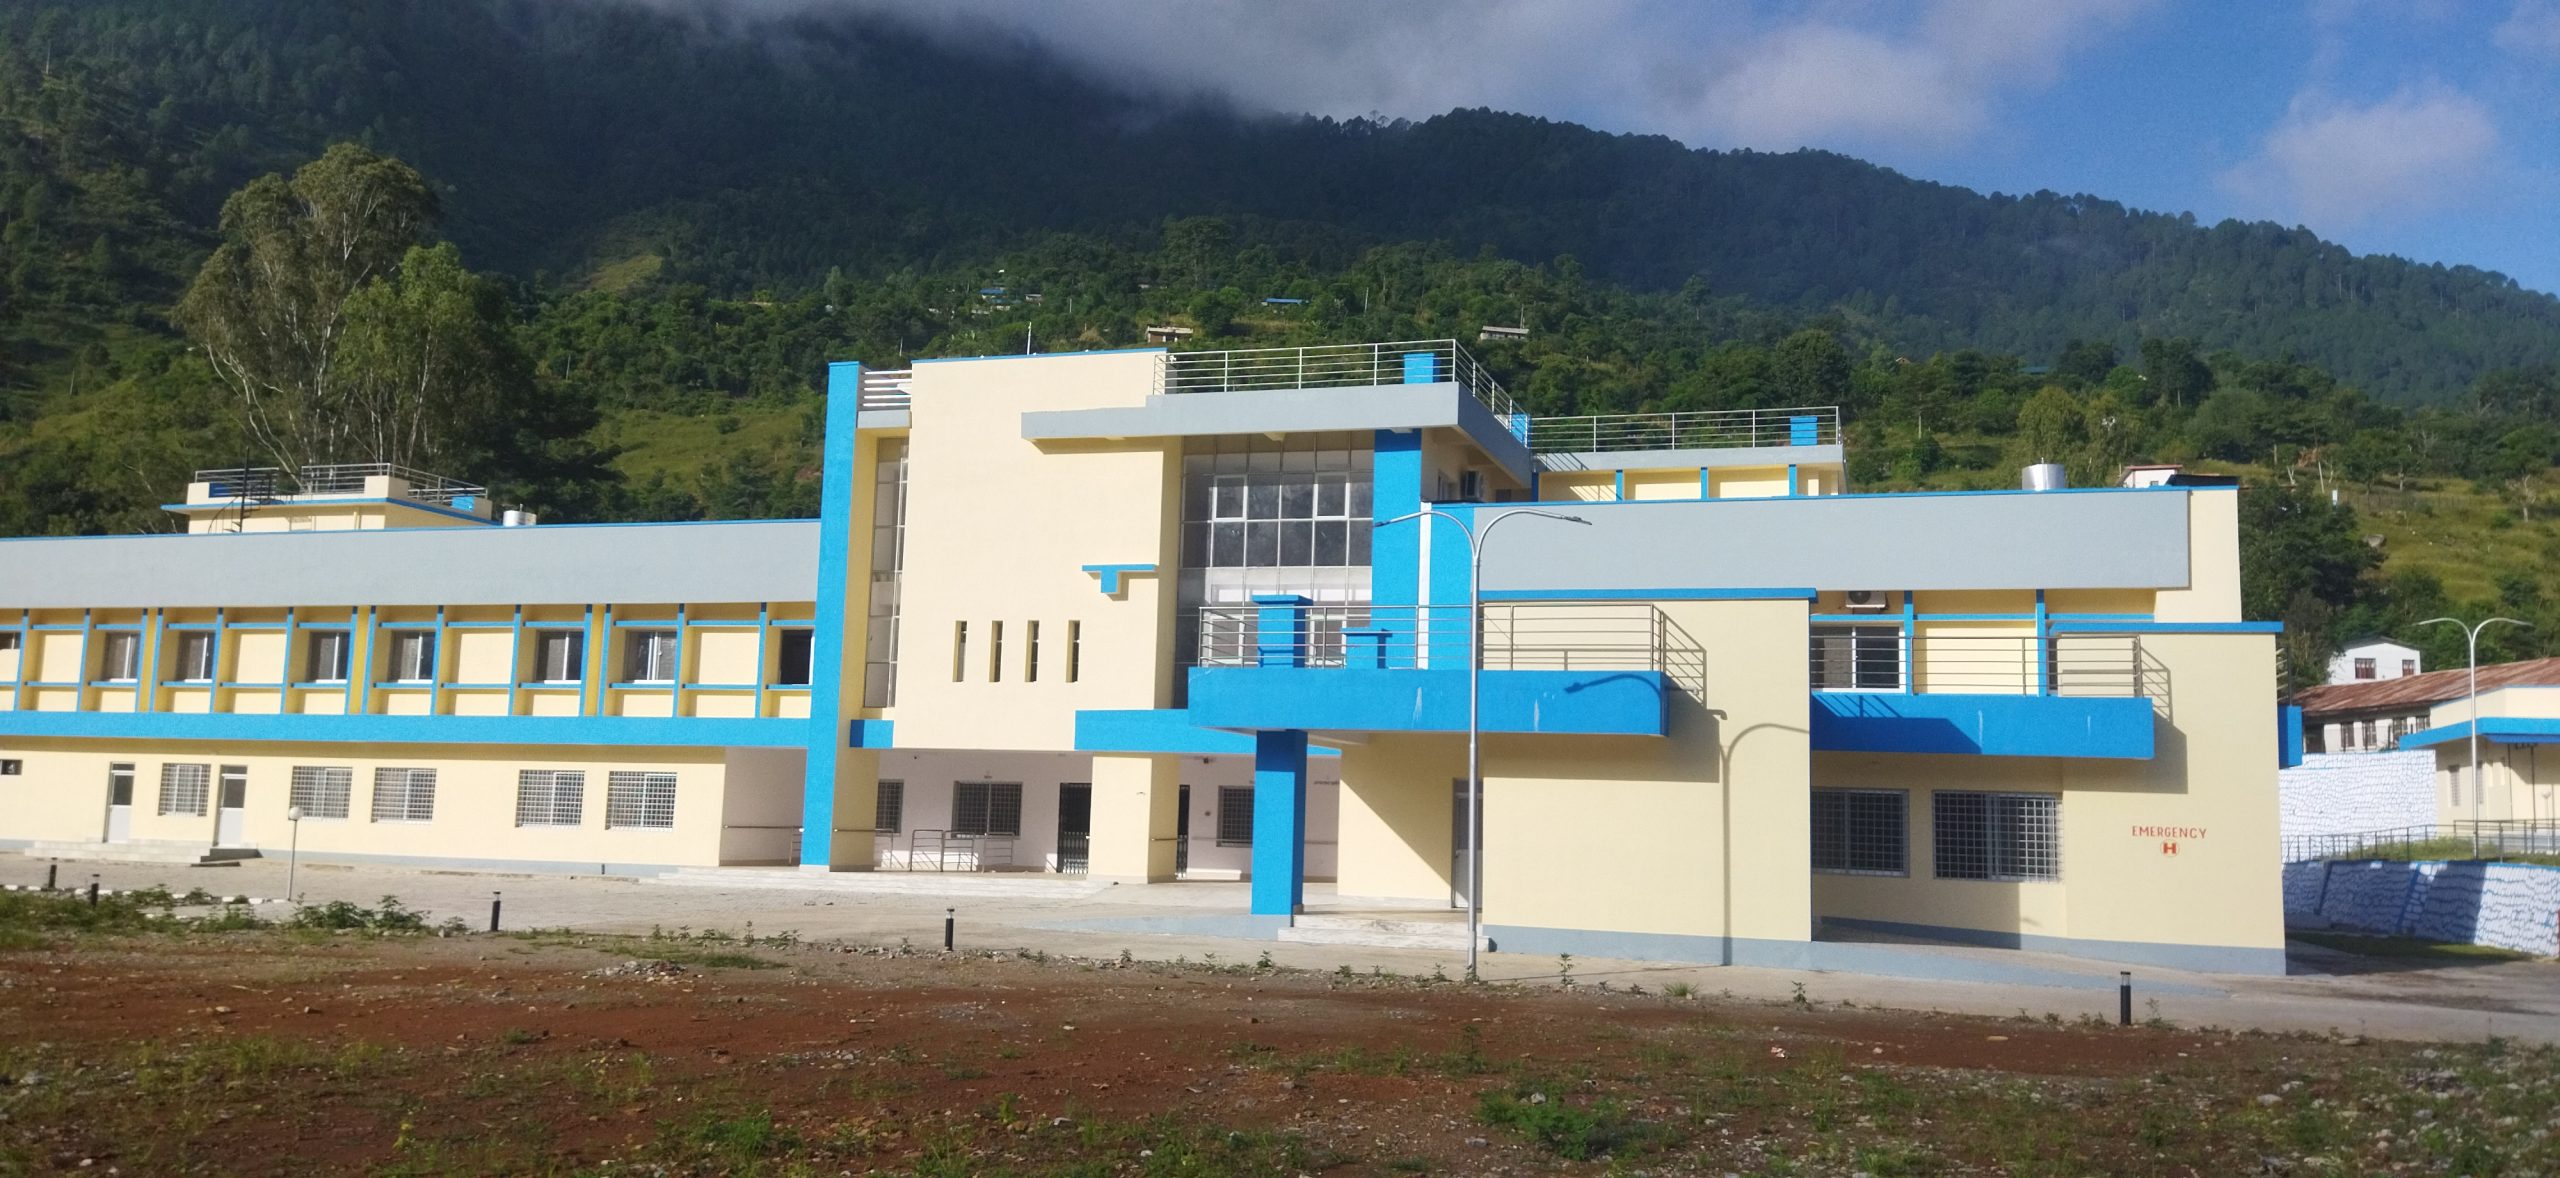 जुम्लाको चन्दननाथमा १५ शय्याको आयुर्वेद अस्पताल बनाइने